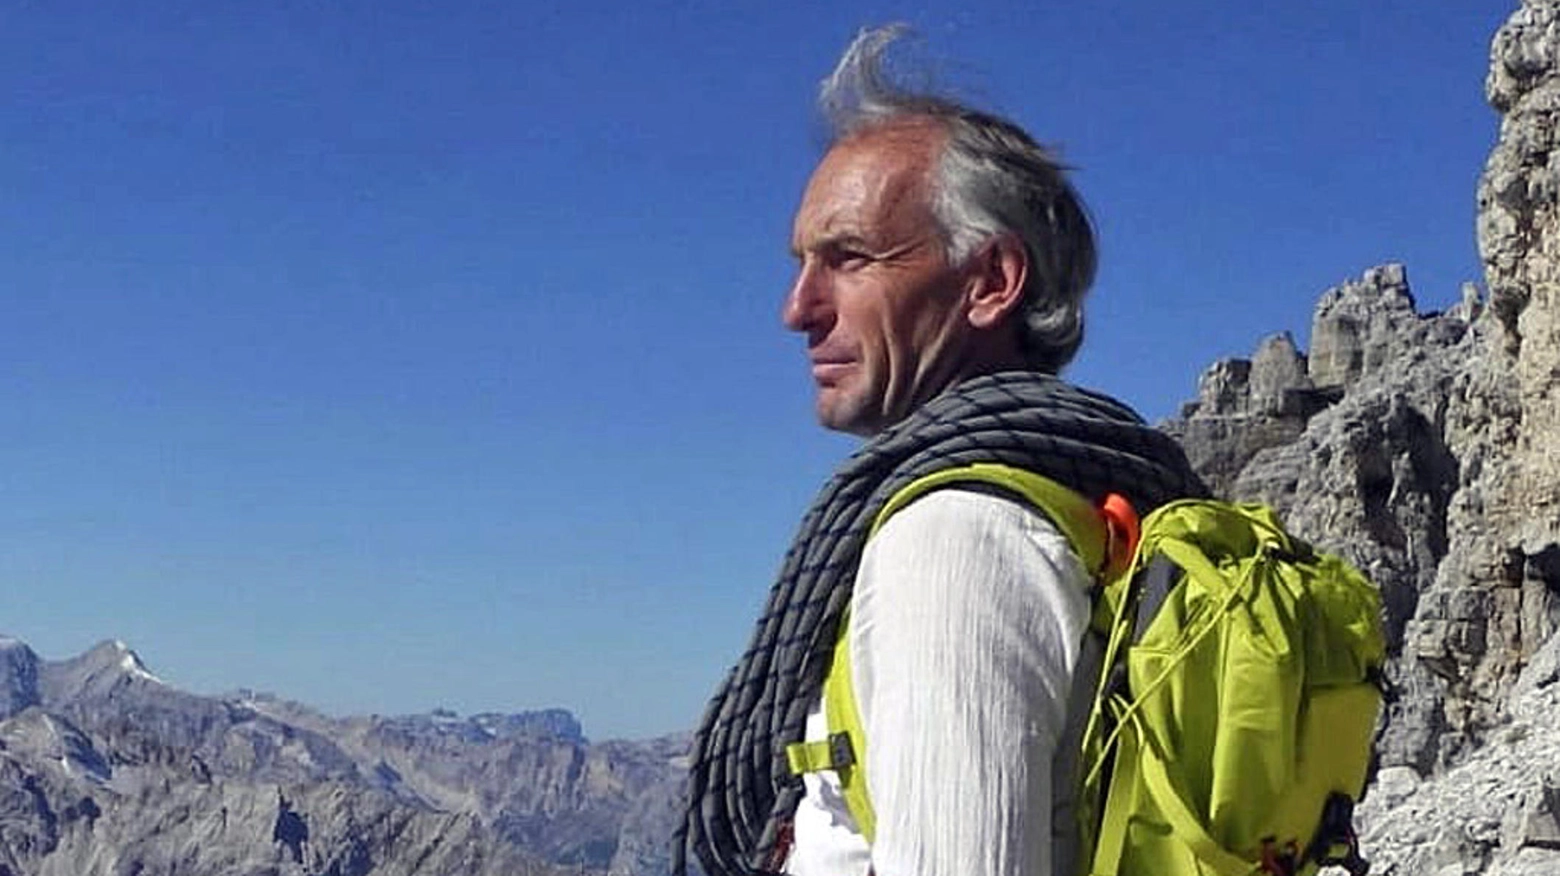 Diego Zanesco, la guida alpina di 62 anni precipitata sulle Dolomiti